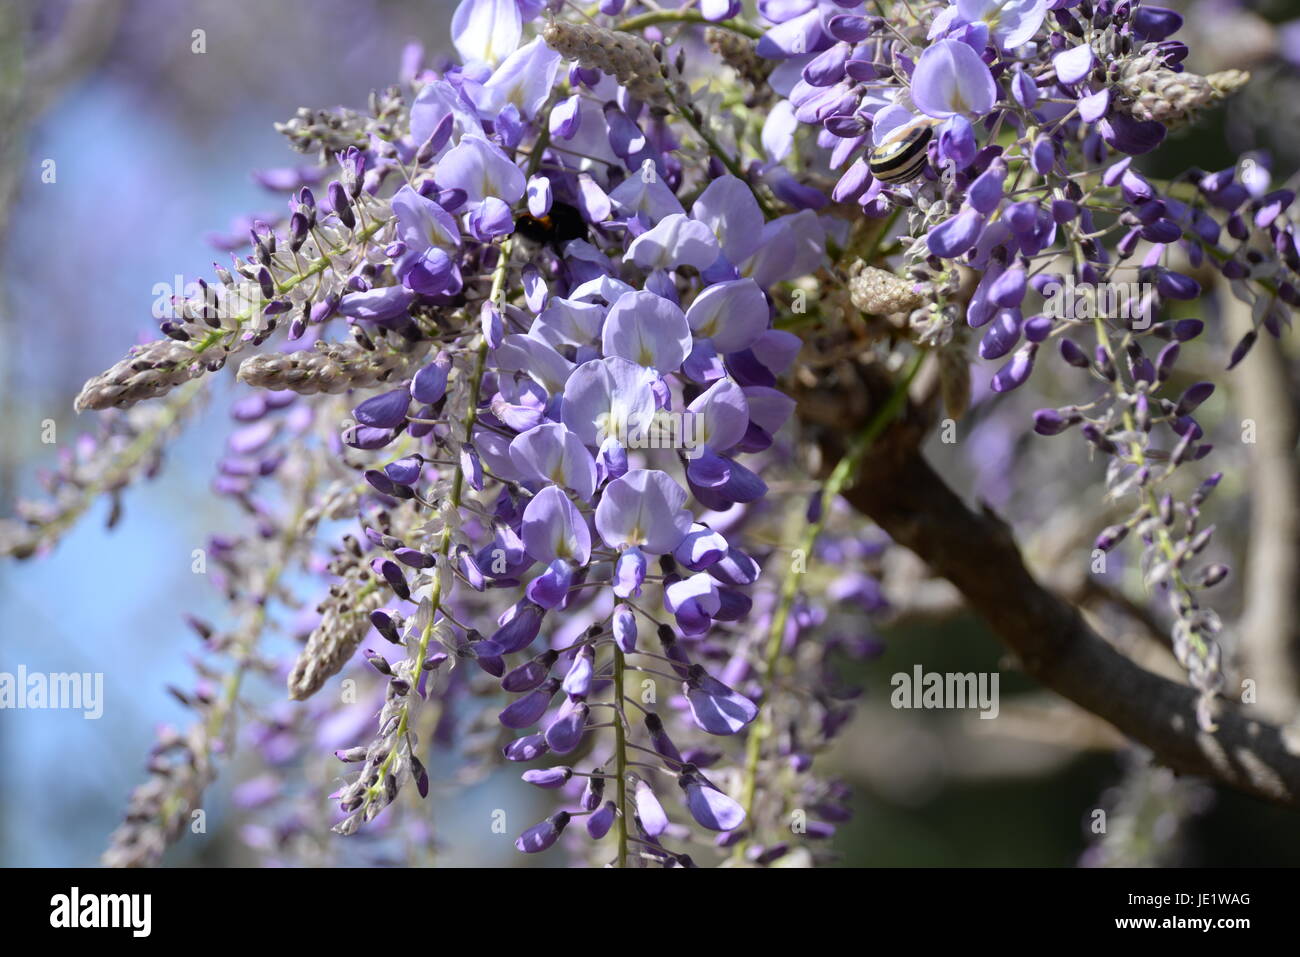 Glyzinie, blauregen, Wisterie, Wistarie, Glyzine, Glyzinien, wisteria,  blume, zierpflanze, blüte, blüten, kletterpflanze, blütenstand,  blütenstände, blau, violett Stock Photo - Alamy